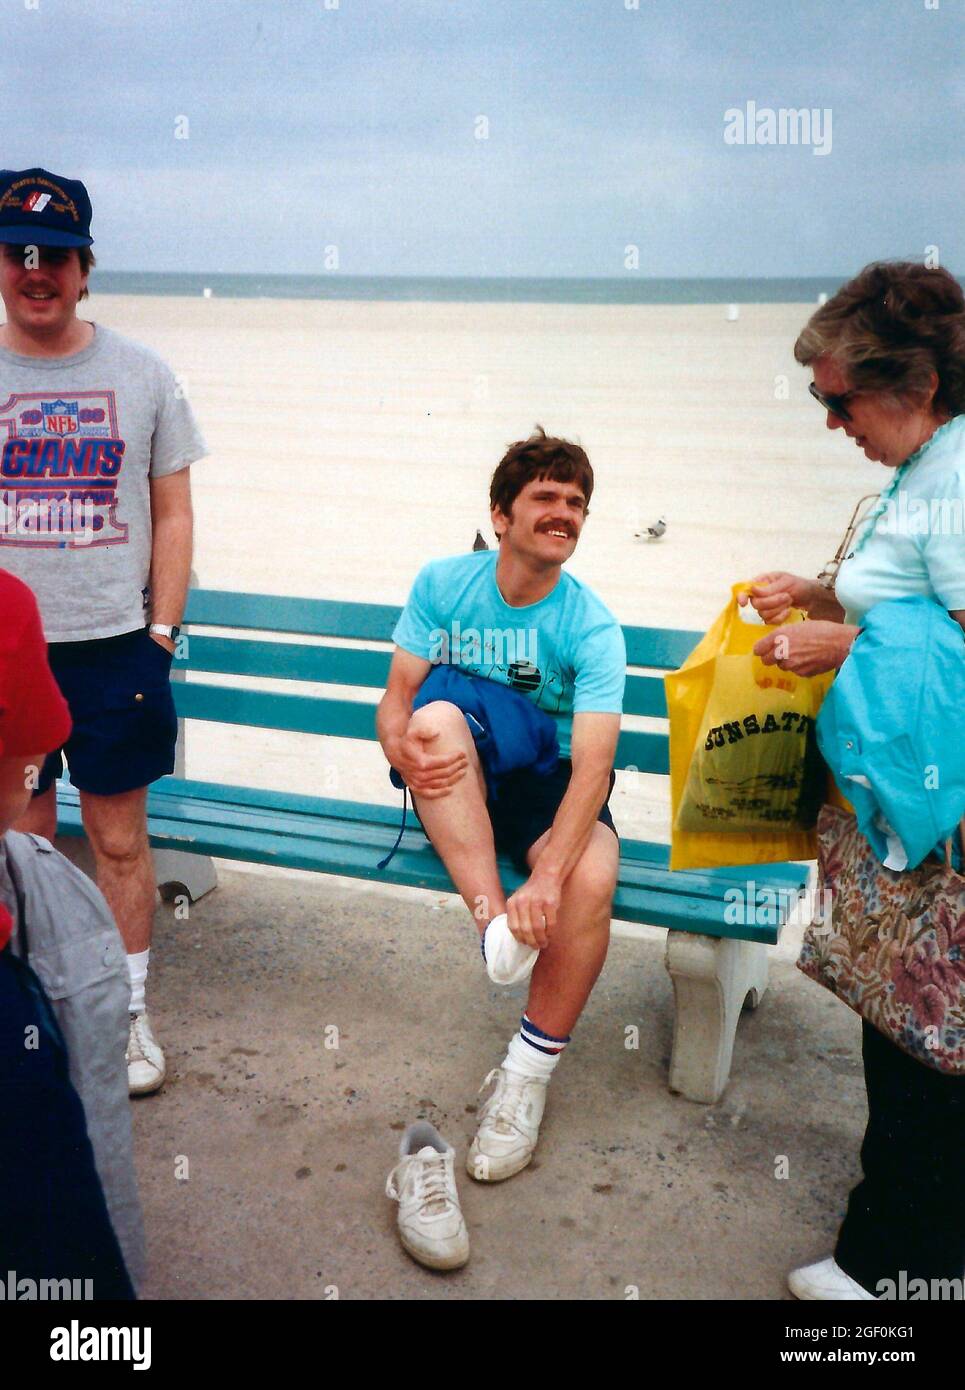 Mann, der auf einer Bank sitzt und seine Schuhe auszieht, während andere herumstehen. Auf der Promenade in Ocean City, Maryland, um 1988 Stockfoto